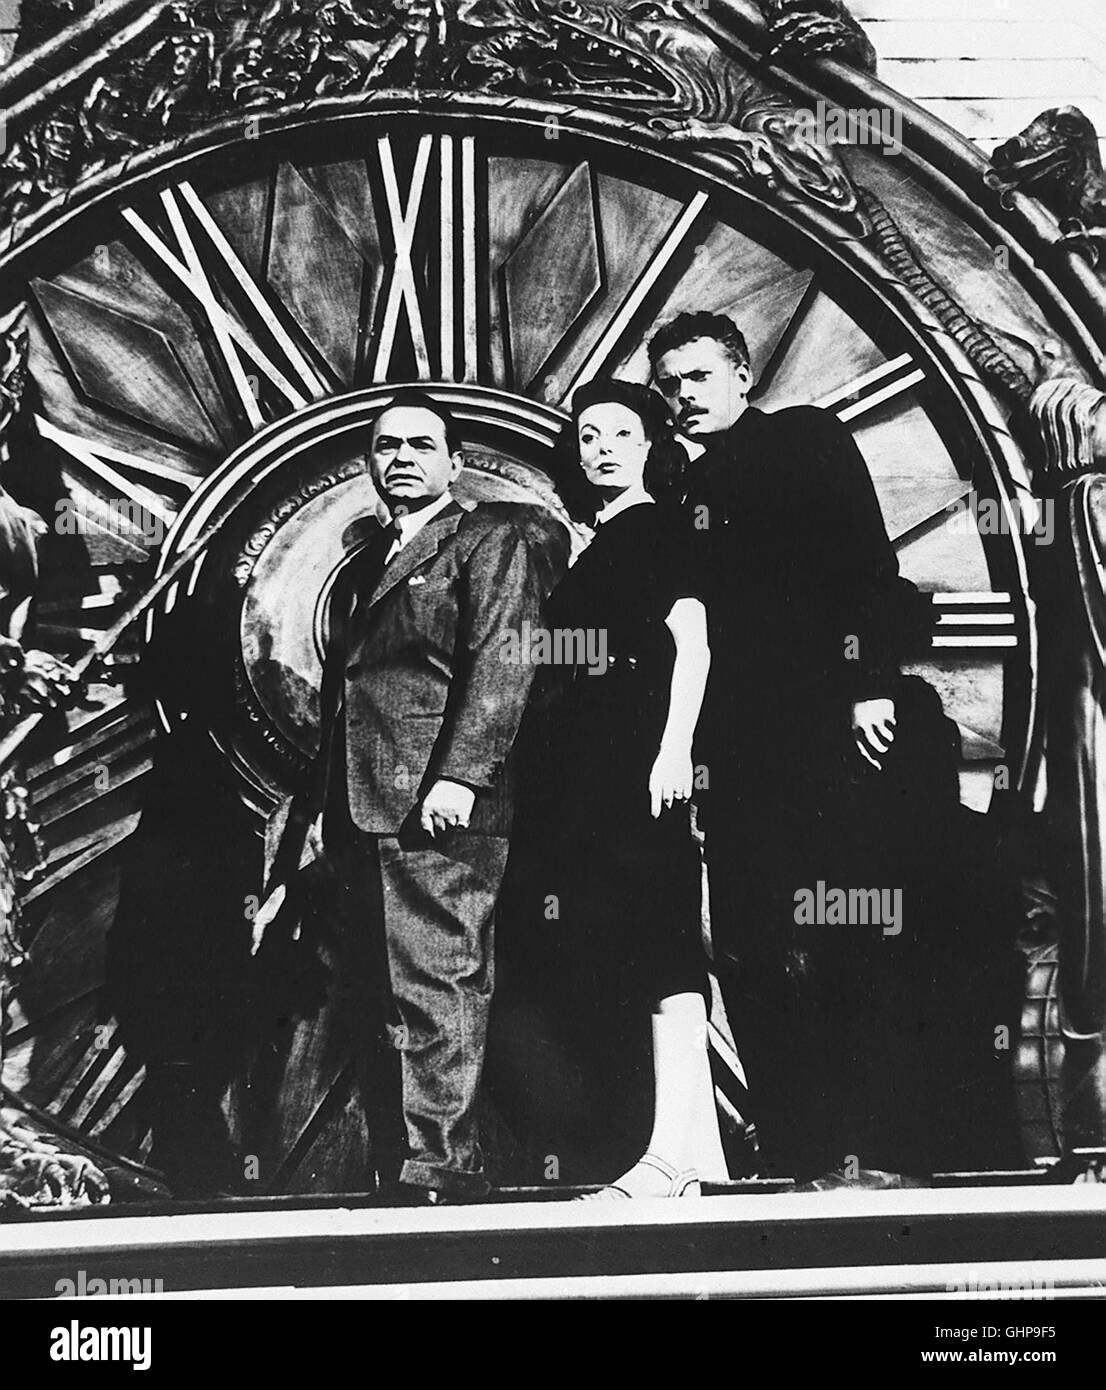 DIE SPUR DES FREMDEN Wilson (EDWARD G. ROBINSON) will Charles Rankin (ORSON WELLES, rechts) als deutschen Kriegsverbrecher entlarven, doch dazu braucht er die Hilfe von dessen Frau Mary (LORETTA YOUNG). Auf einem Glockenturm kommt es zur Entscheidung... Regie: Orson Welles aka. The Stranger Stock Photo